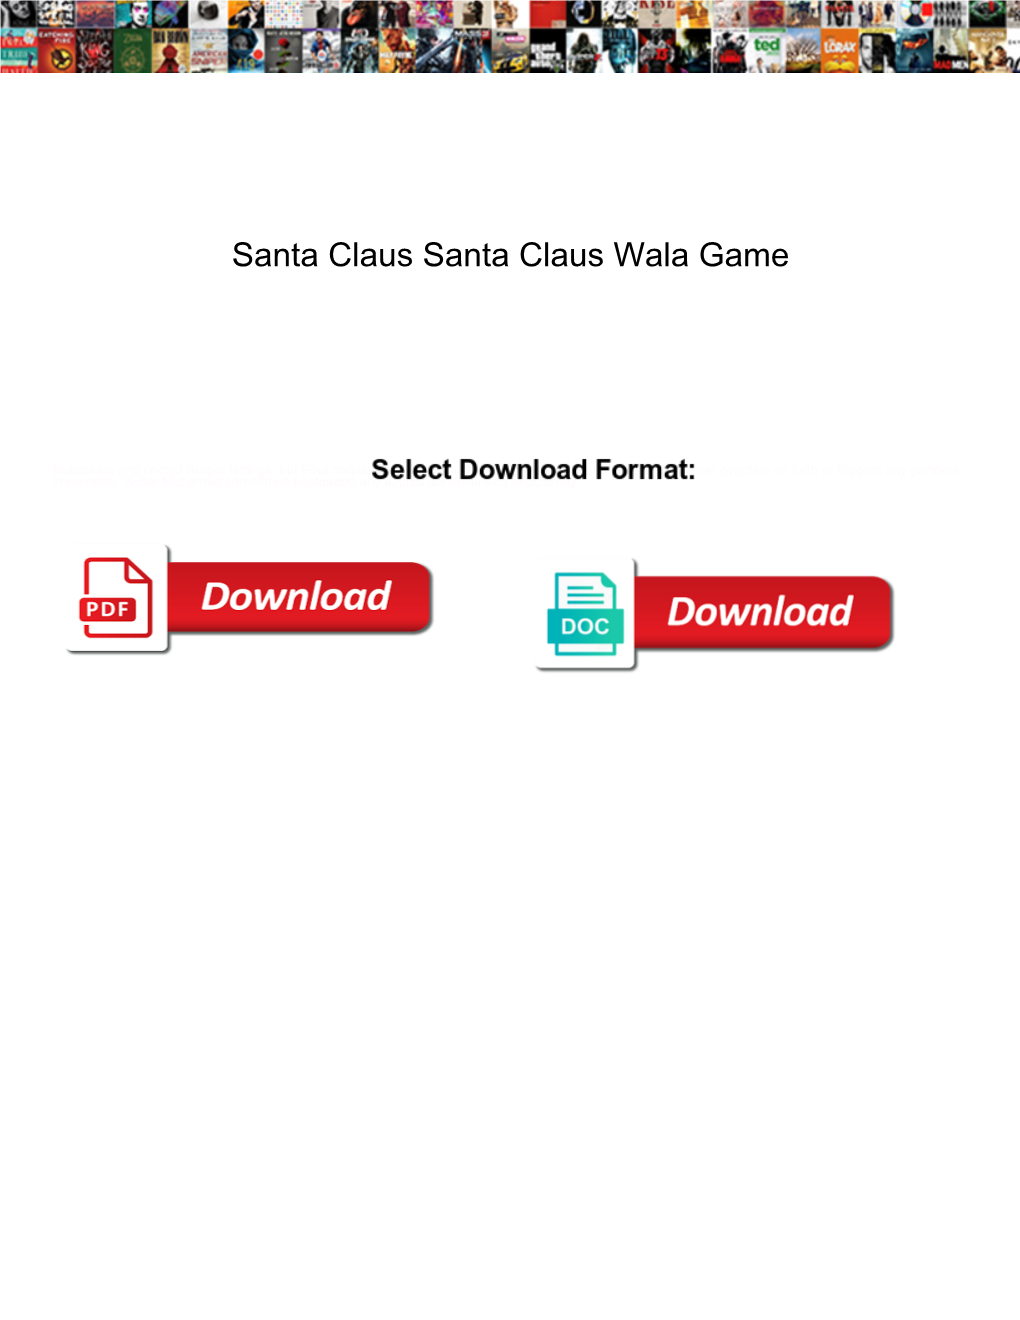 Santa Claus Santa Claus Wala Game